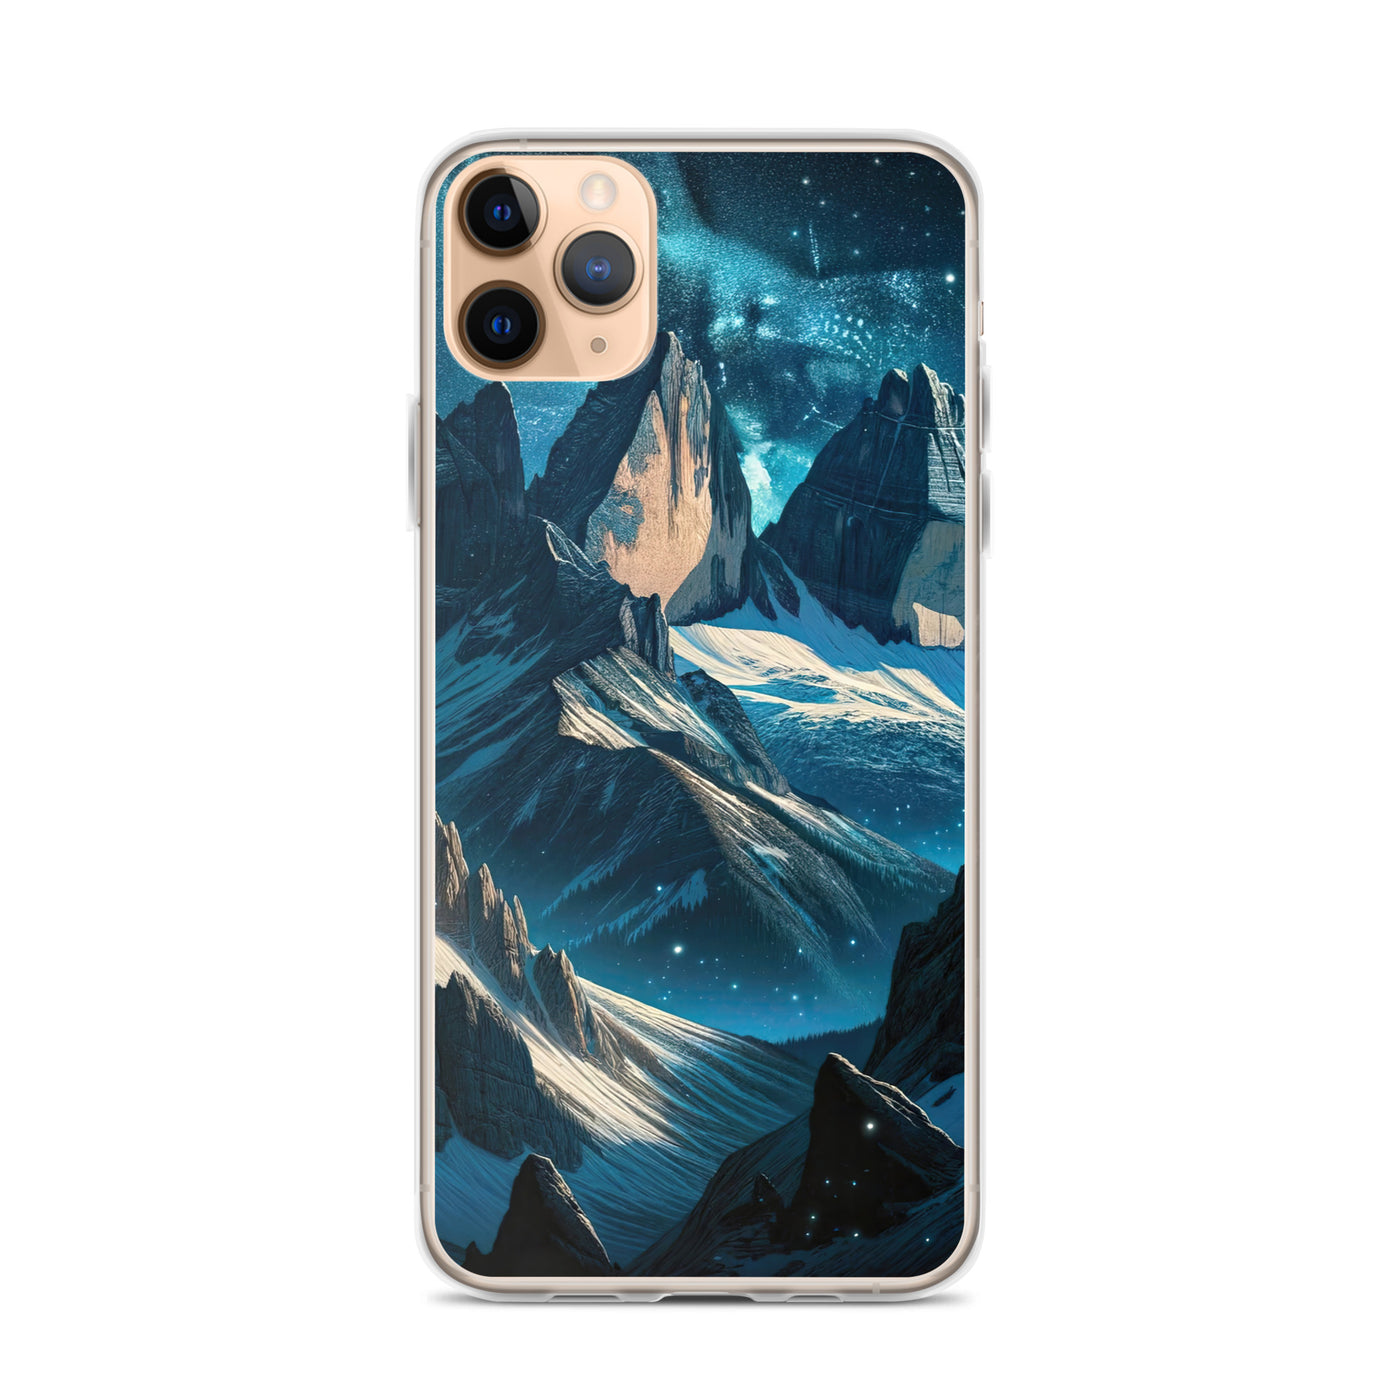 Fuchs in Alpennacht: Digitale Kunst der eisigen Berge im Mondlicht - iPhone Schutzhülle (durchsichtig) camping xxx yyy zzz iPhone 11 Pro Max